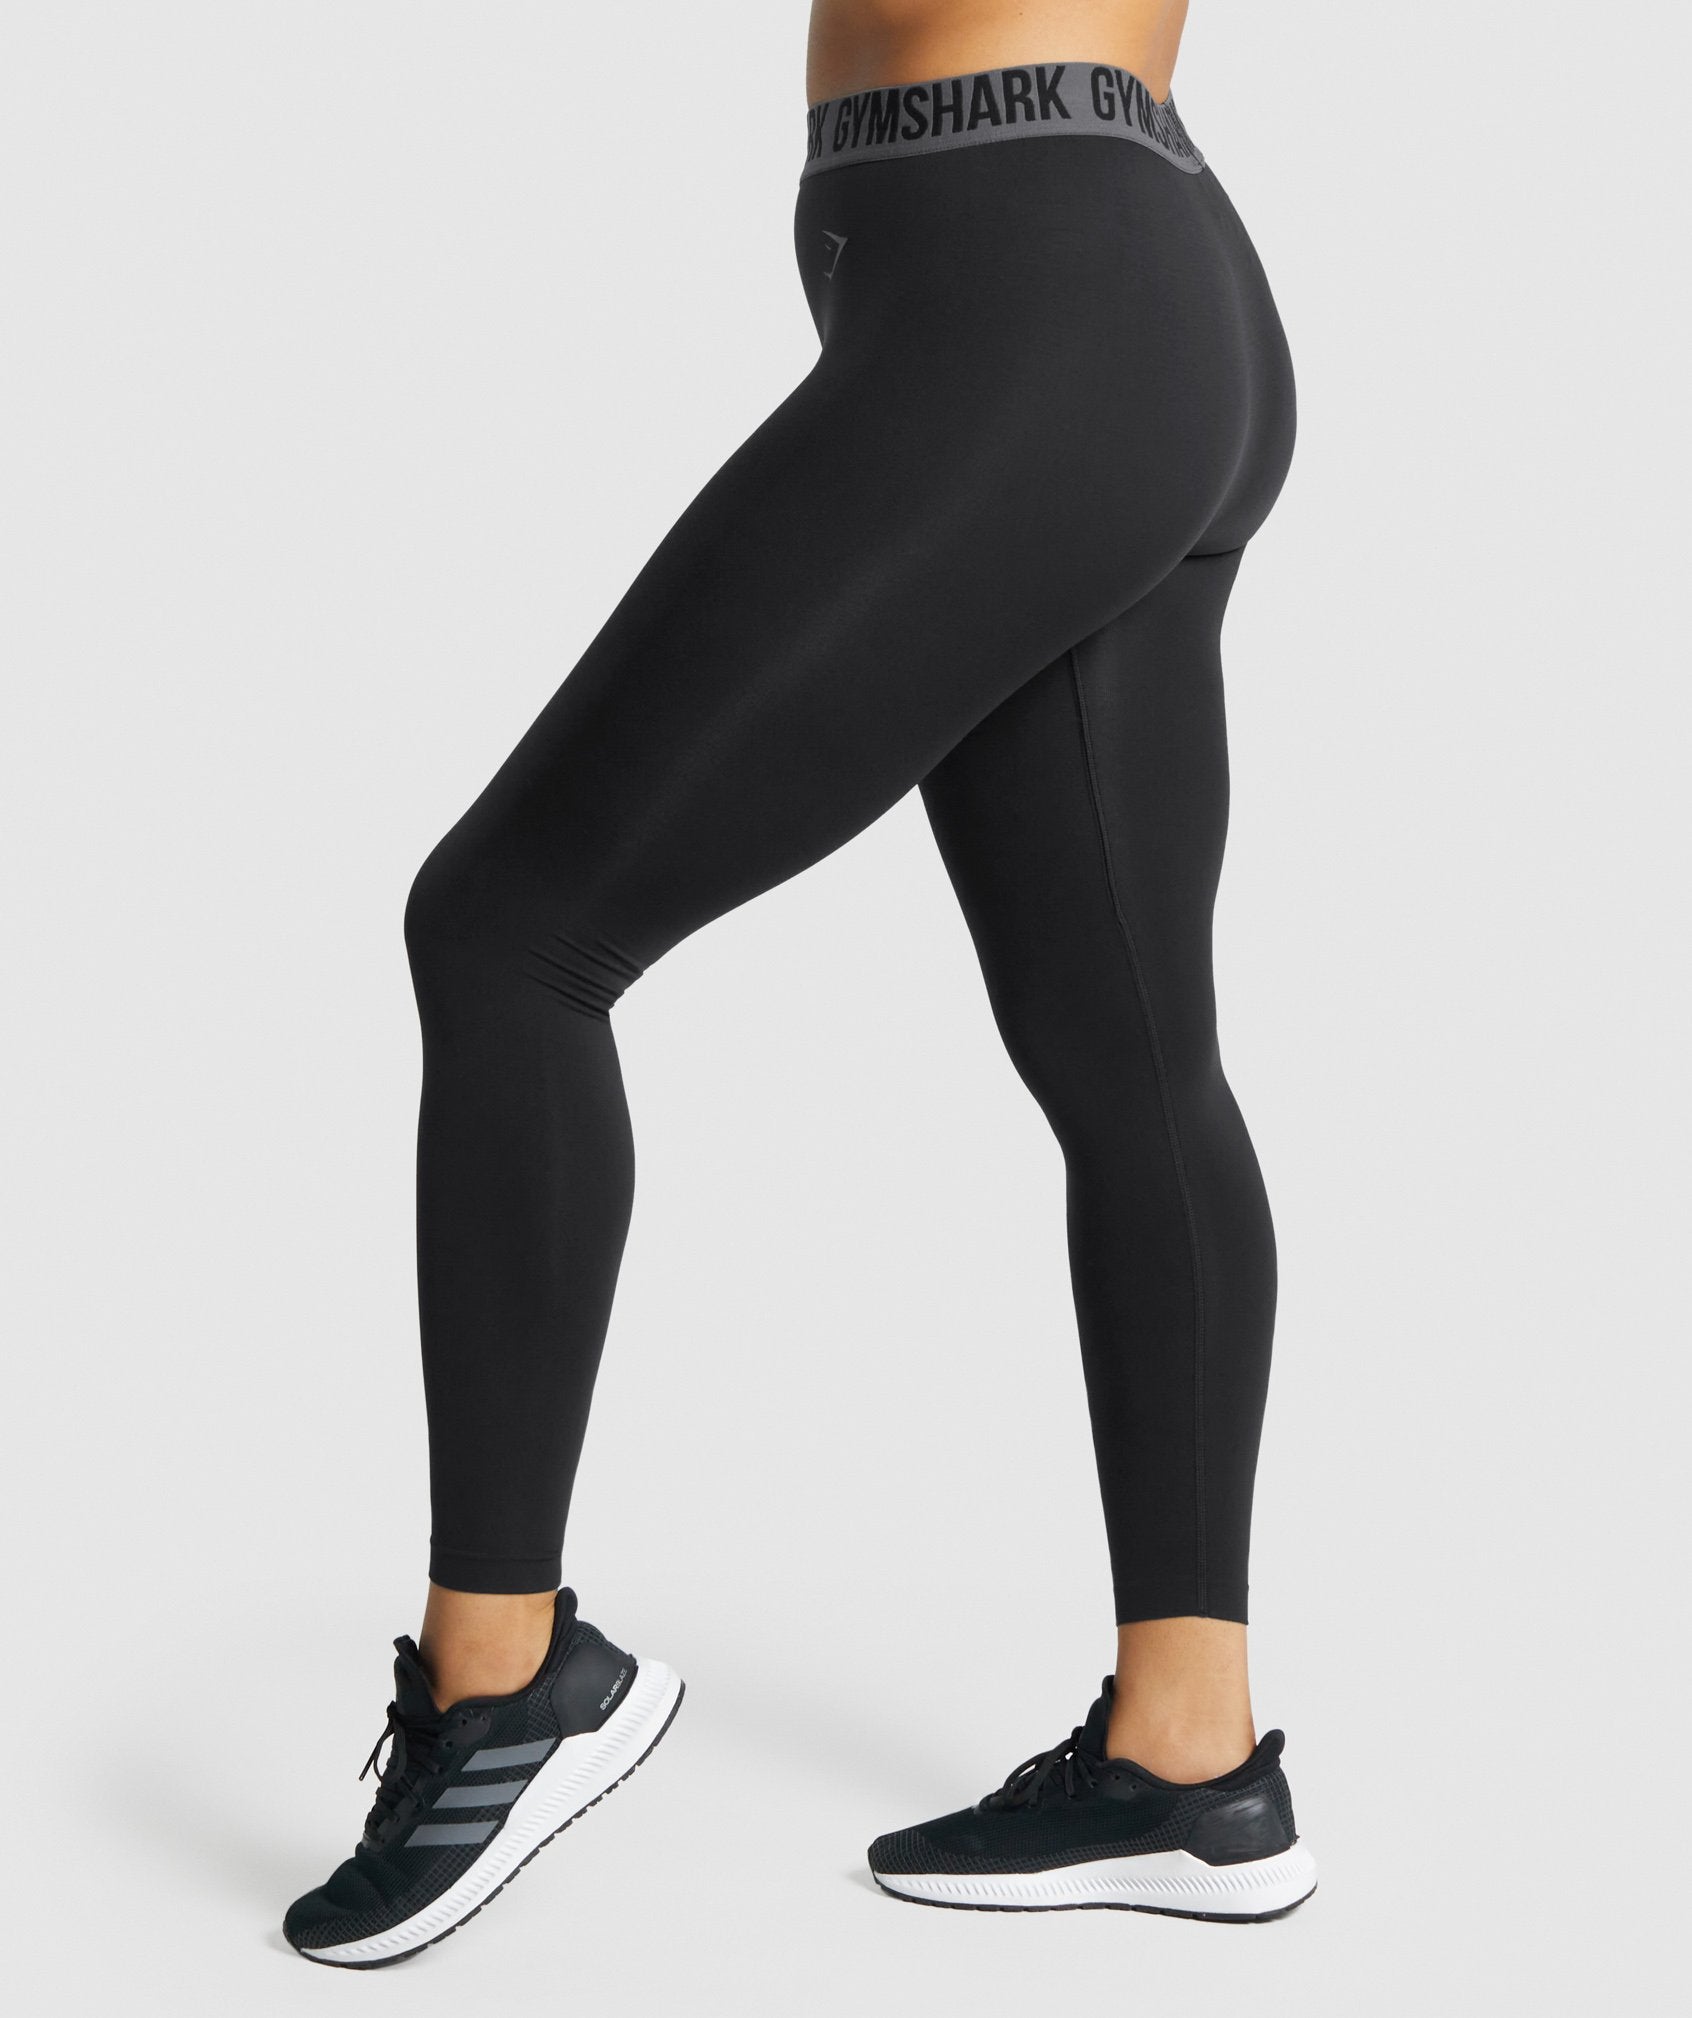 Gymshark Women’s Flex Seamless Leggings (Size Small)